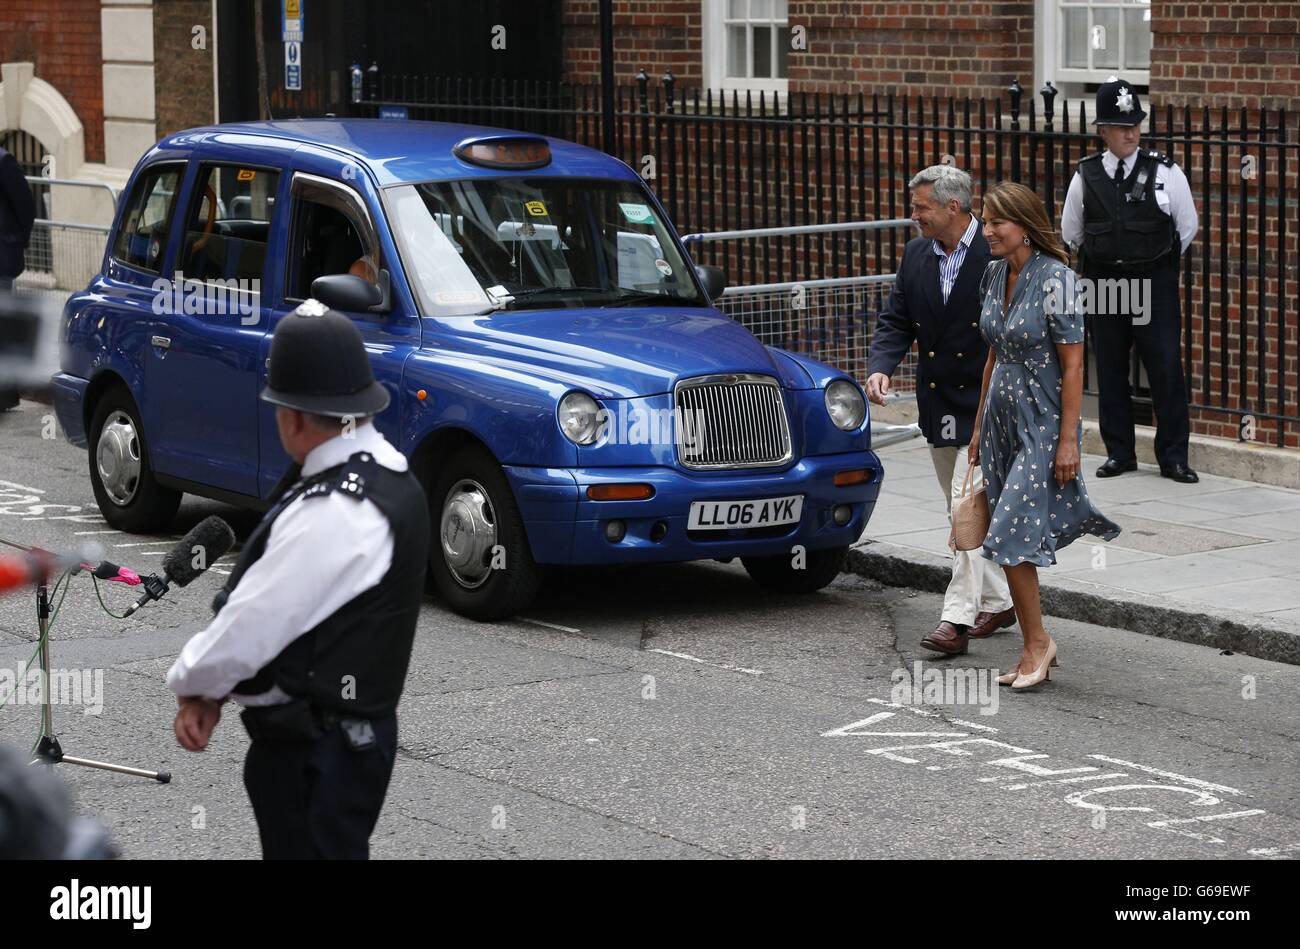 Die Eltern der Herzogin von Cambridge, Carole und Michael Middleton, verlassen den Lindo-Flügel des St. Mary's Hospital in London, nachdem sie ihren neuen Enkel, Prinz George von Cambridge, treffen. Stockfoto